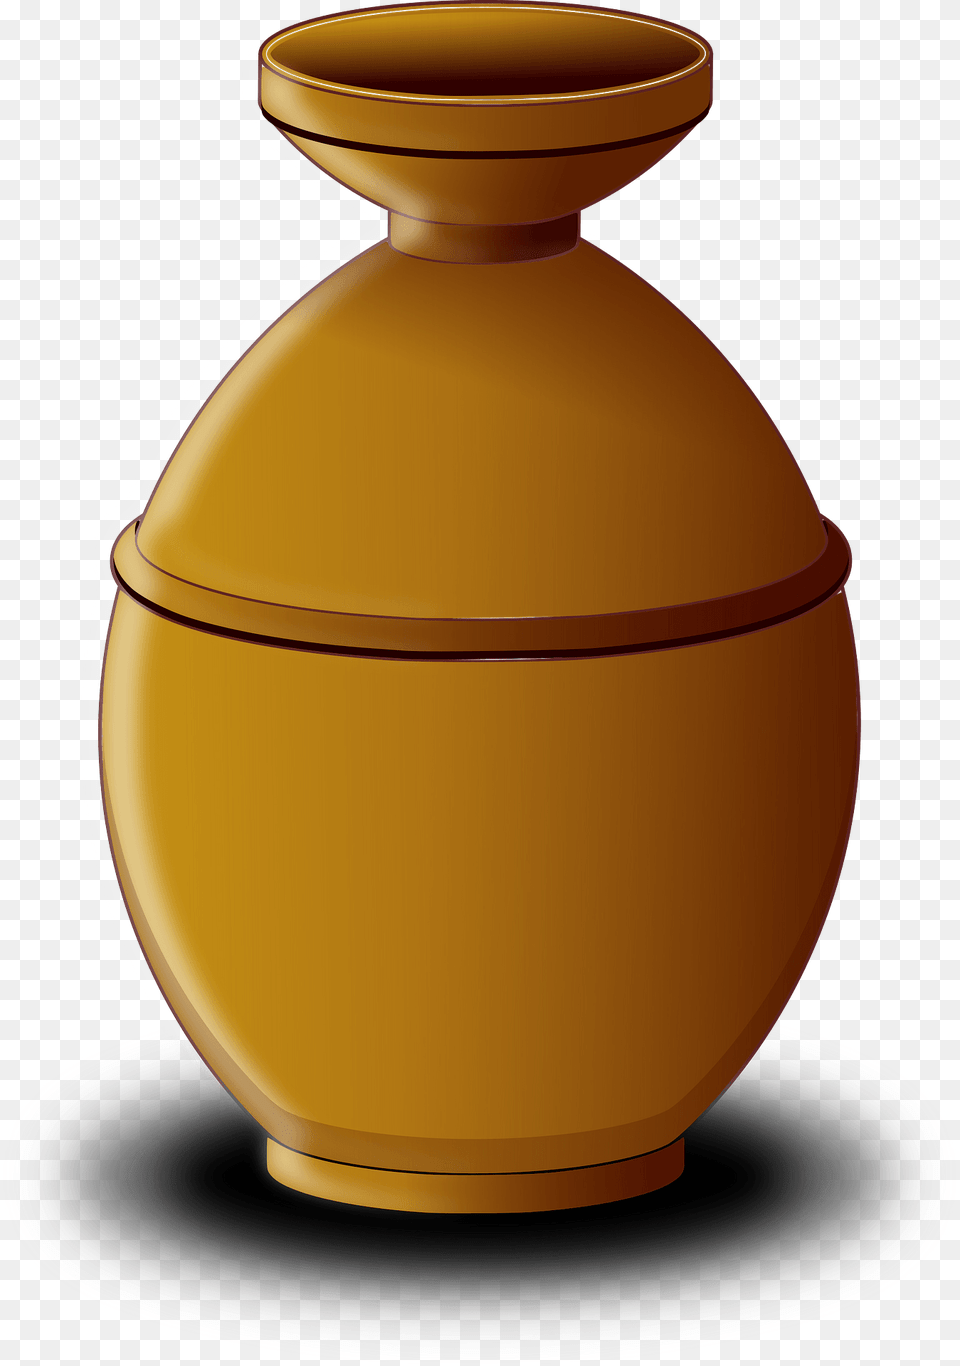 Terracotta Pot Clipart, Jar, Pottery, Urn, Vase Png Image